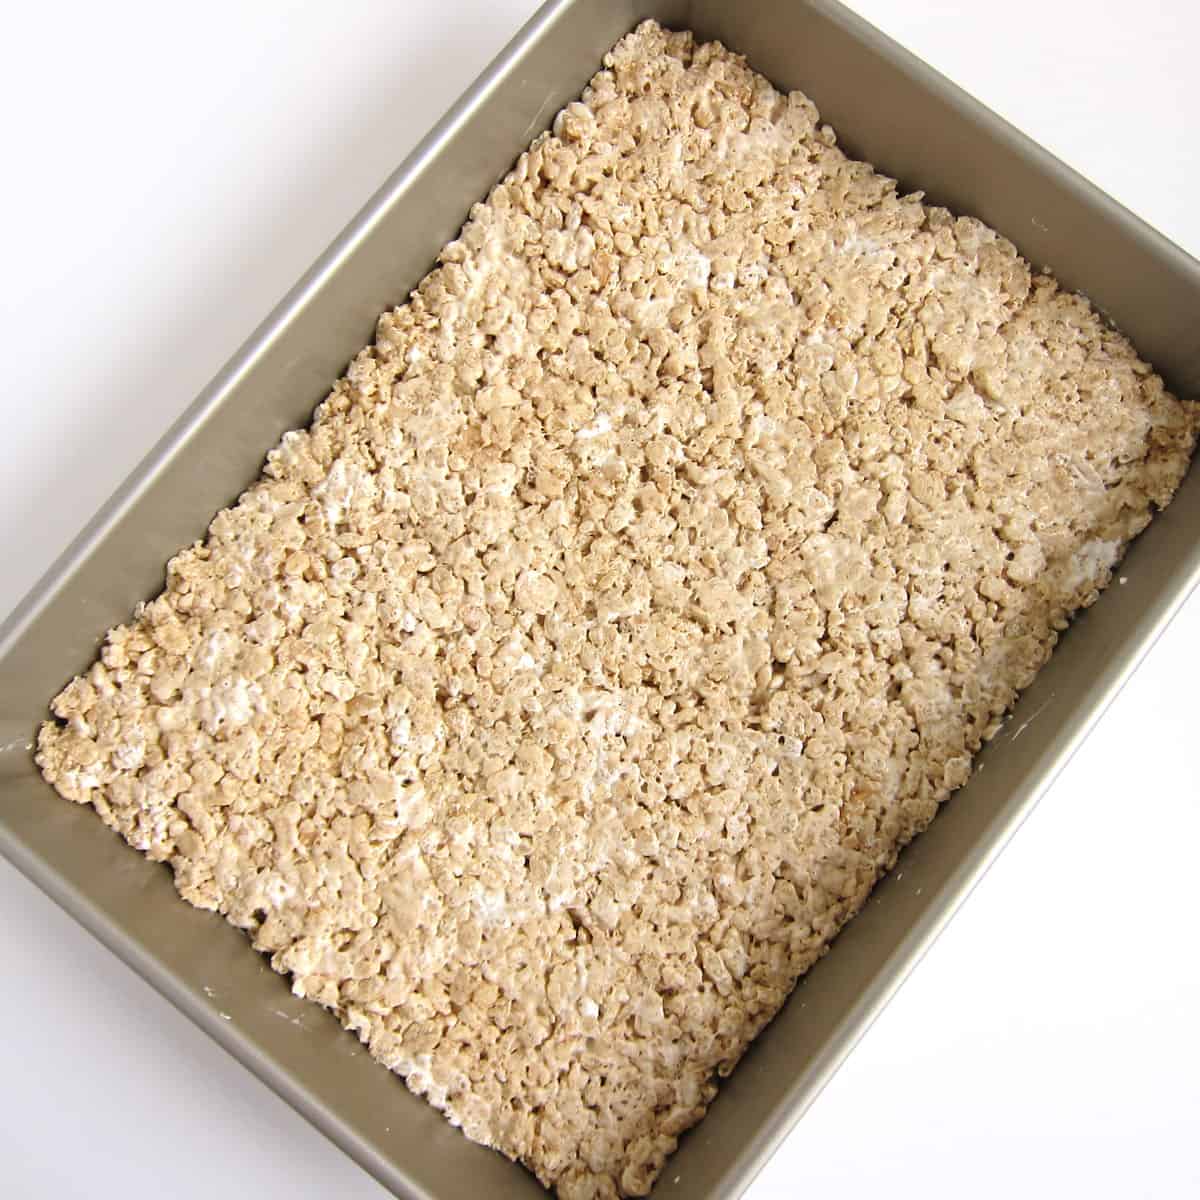 Fluffernutter Rice Krispie Treats spread into a 9x13-inch pan.